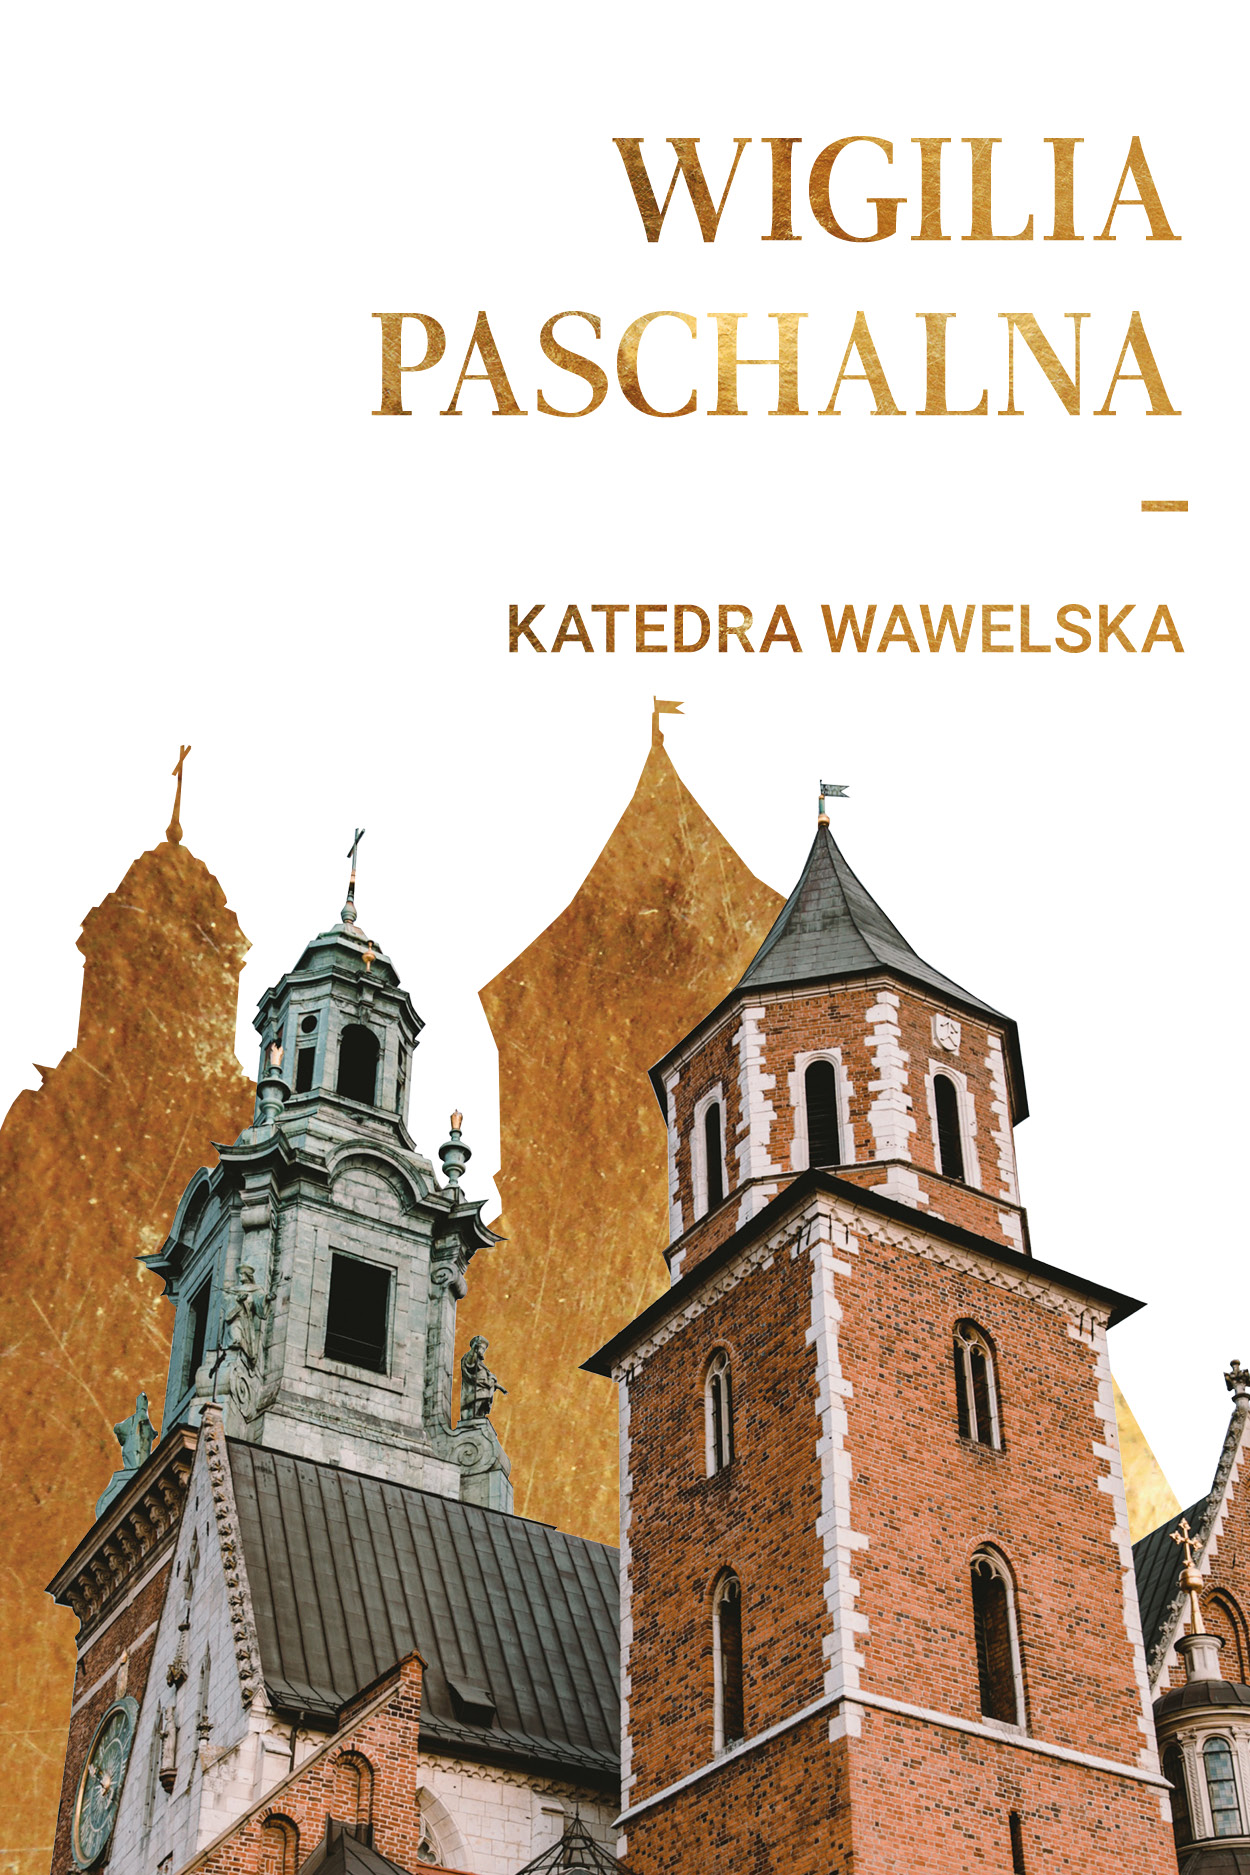 Liturgia Paschalna w katedrze na Wawelu